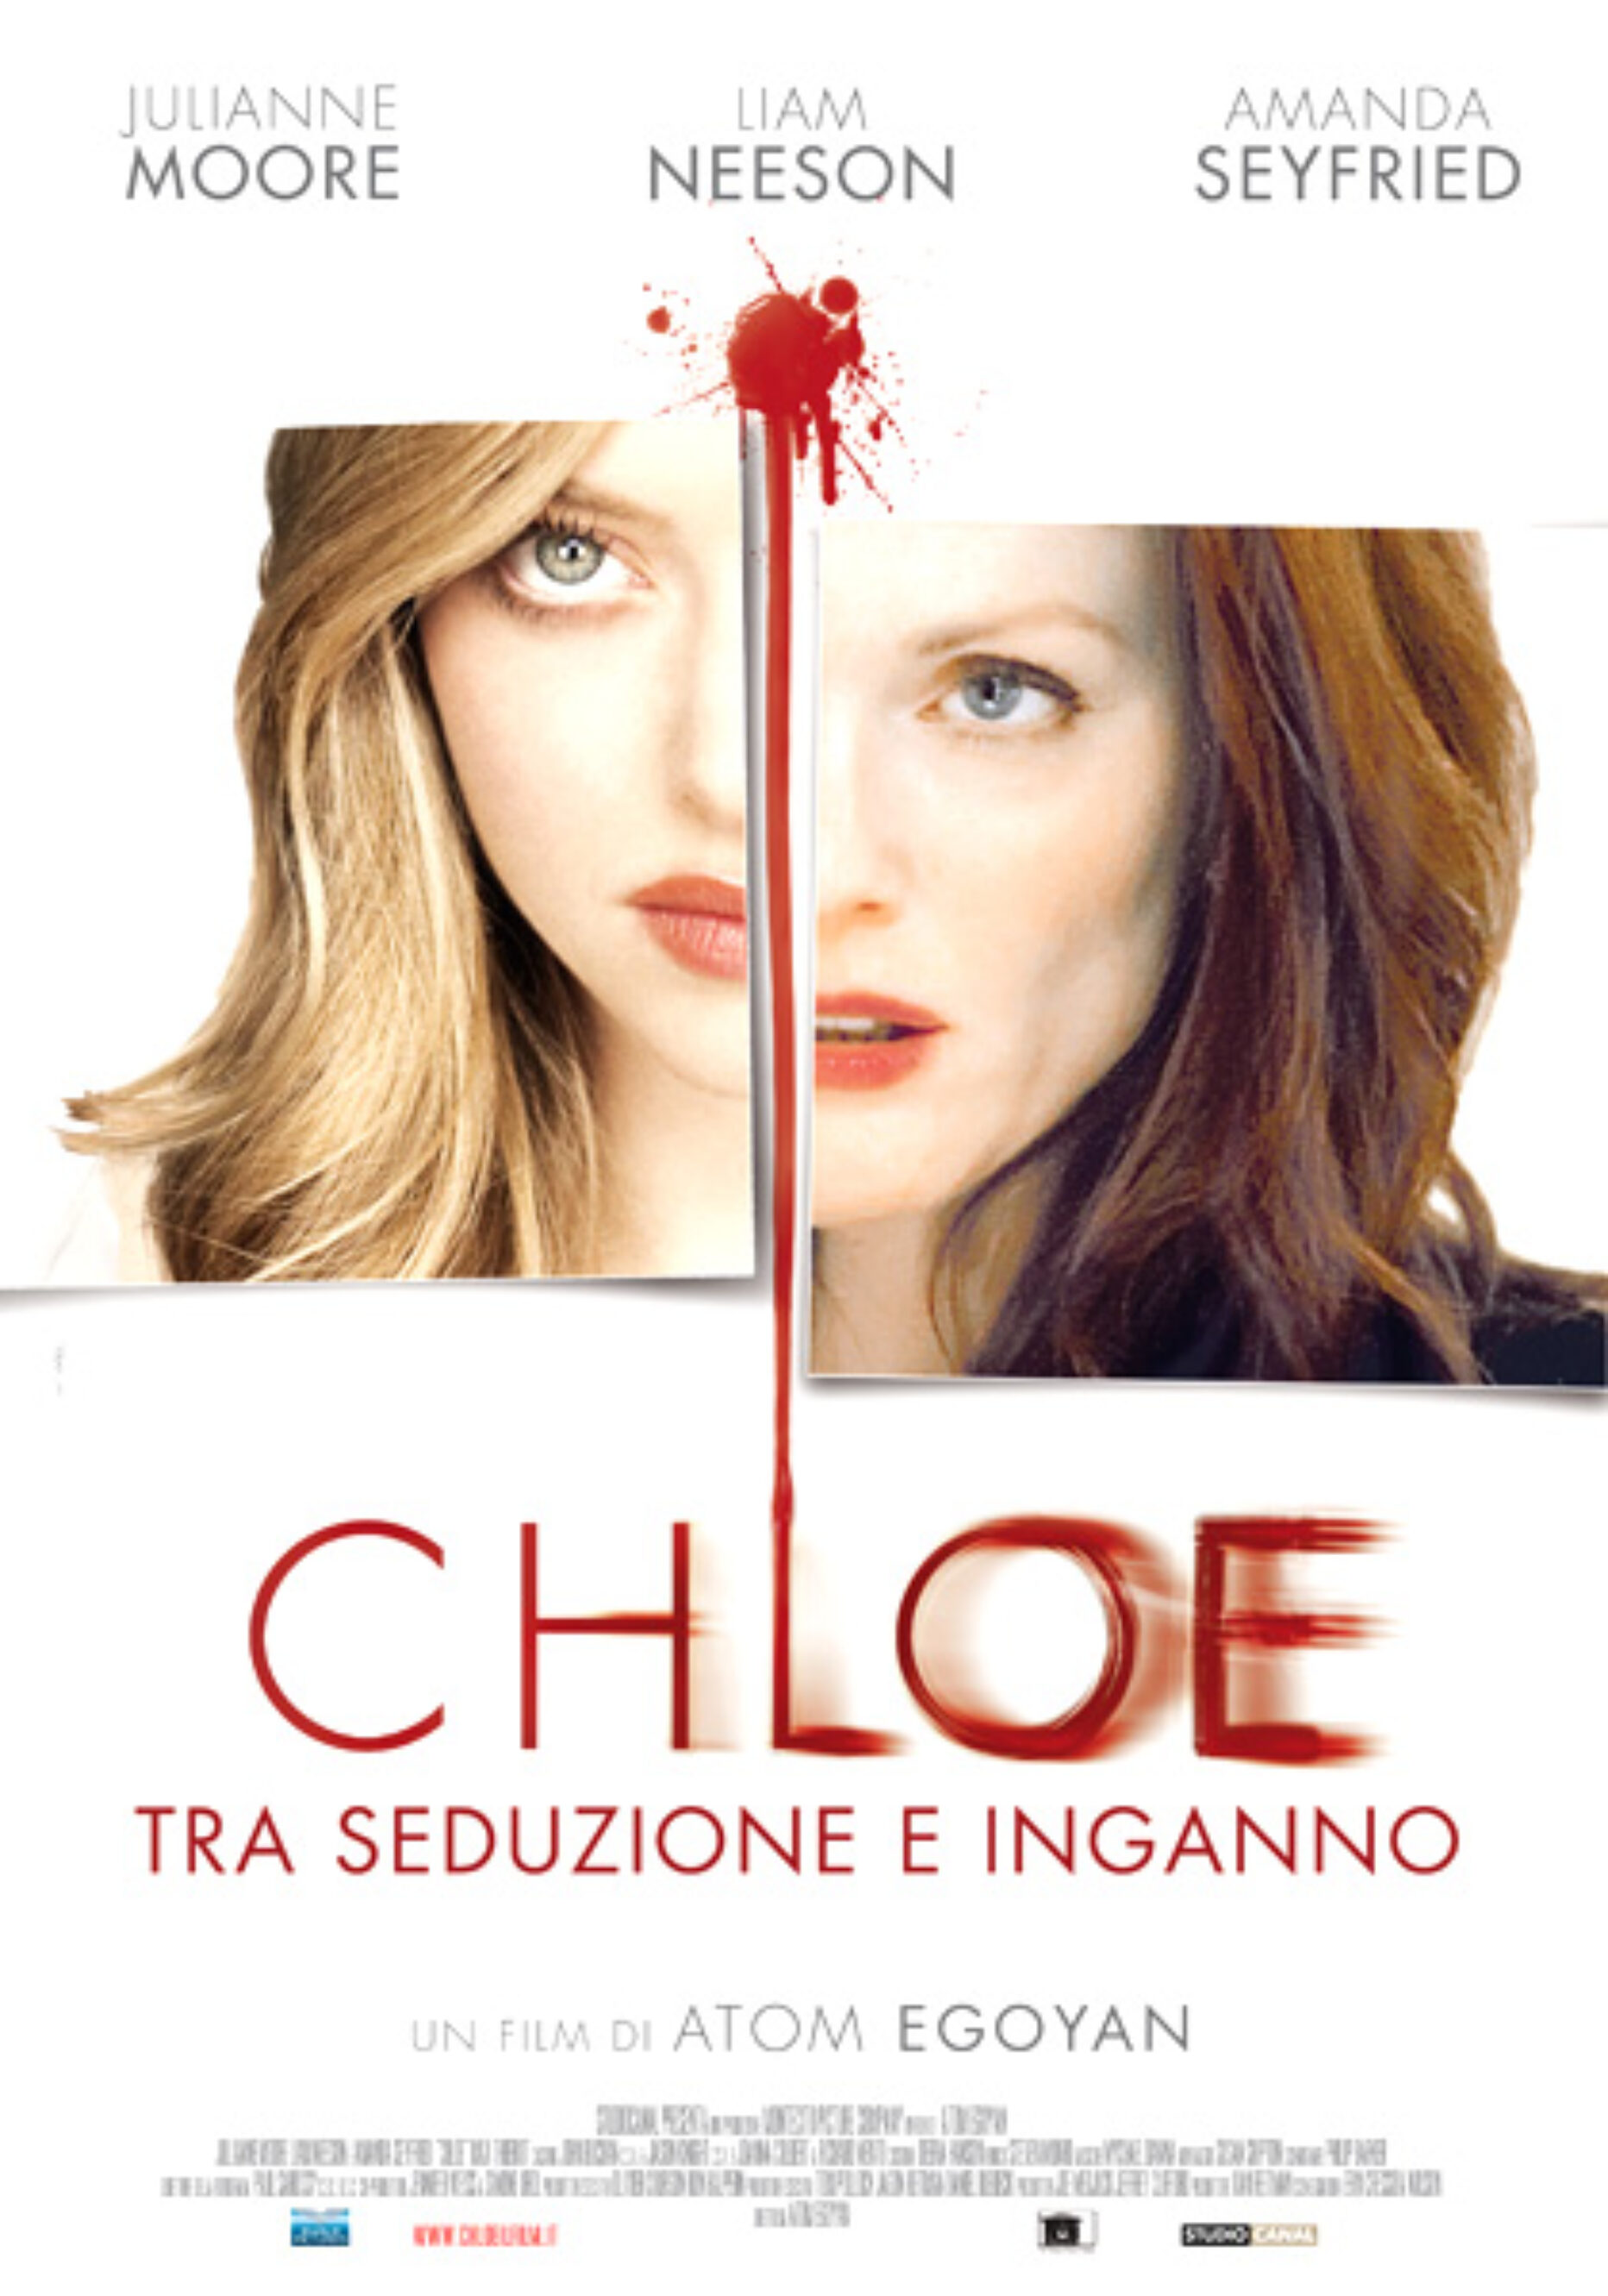 Chloe – Tra Seduzione e Inganno (Egoyan, 2009)